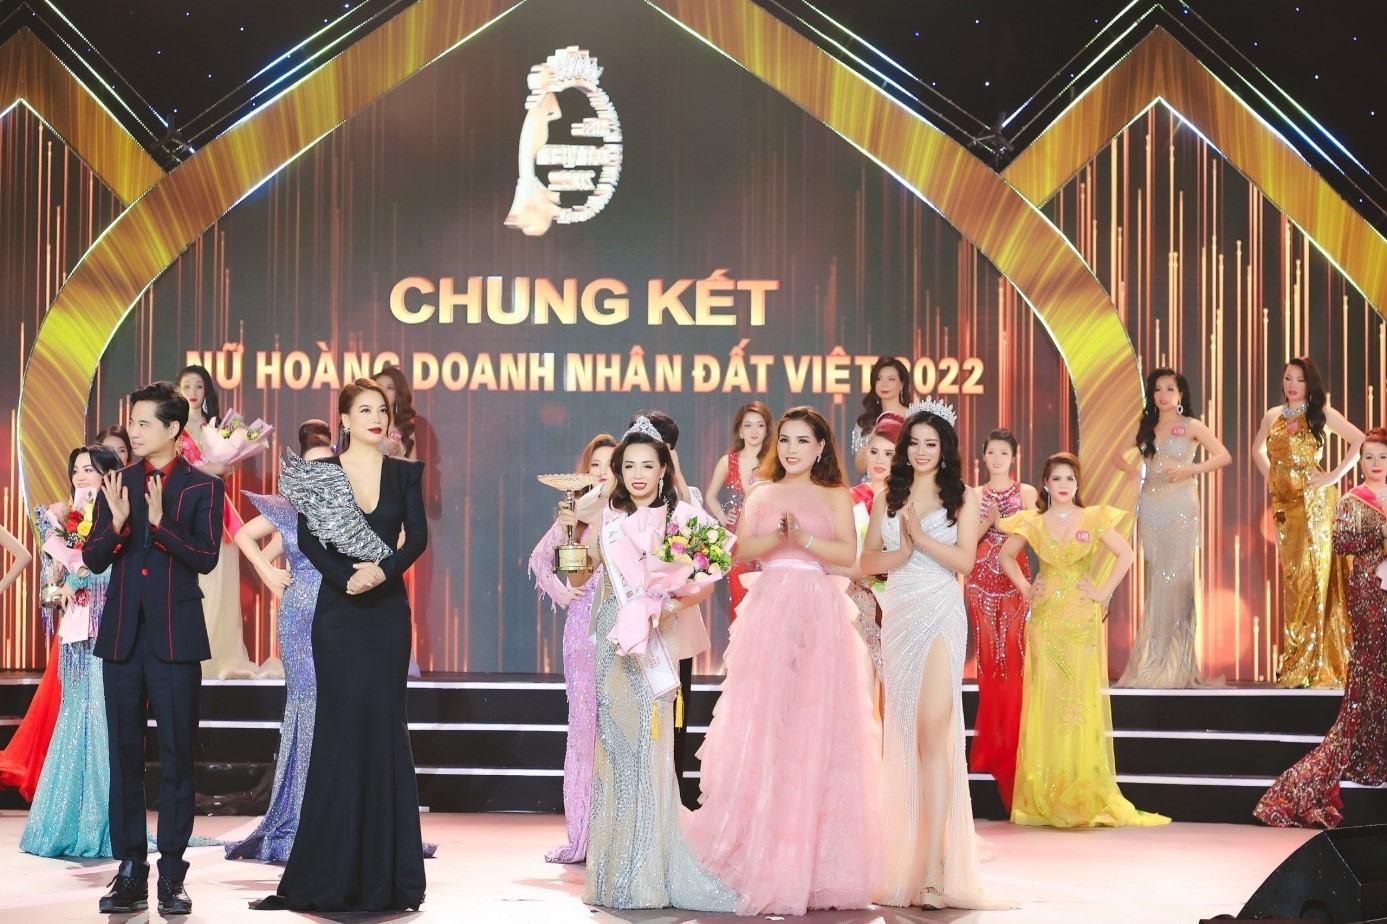 Doanh nhân Lâm Thị Minh Tâm tân Á hoàng 3 cuộc thi Nữ hoàng Doanh nhân đất Việt 2022